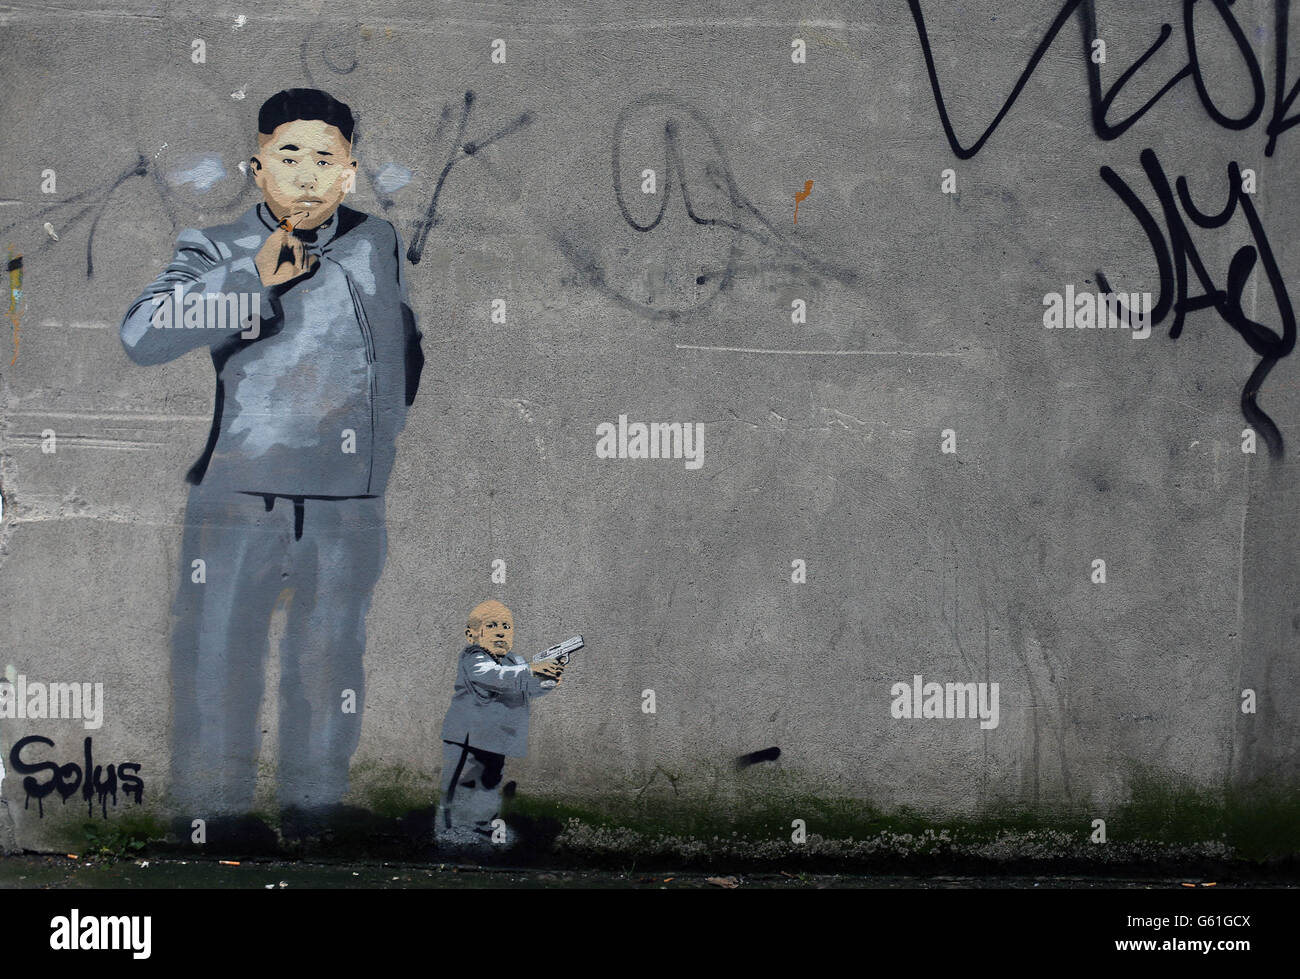 Graffiti par l'artiste de Dublin Solus déplore le dirigeant nord-coréen Kim Jong un dans la région de Smithfield de la ville. Banque D'Images